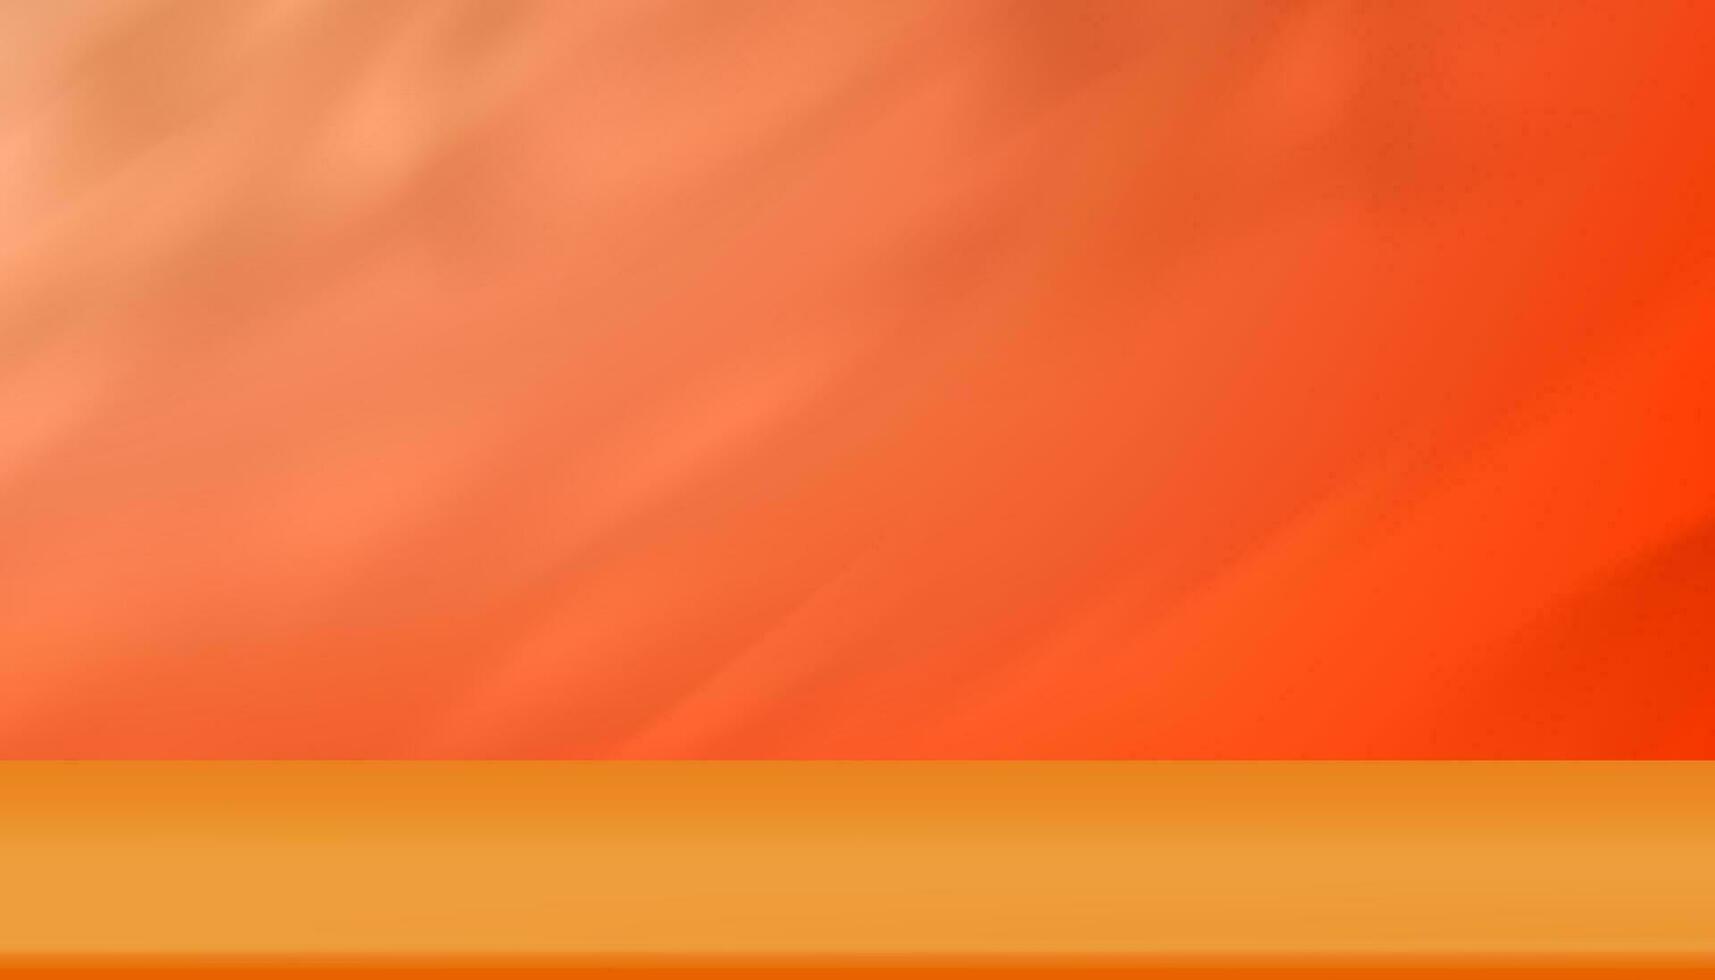 3d studio achtergrond Scherm met schaduw bladeren Aan oranje cement muur kamer, transparant zacht licht voor takken blad, begrip voor kunstmatig Product presentatie, verkoop, online winkel in herfst seizoen vector